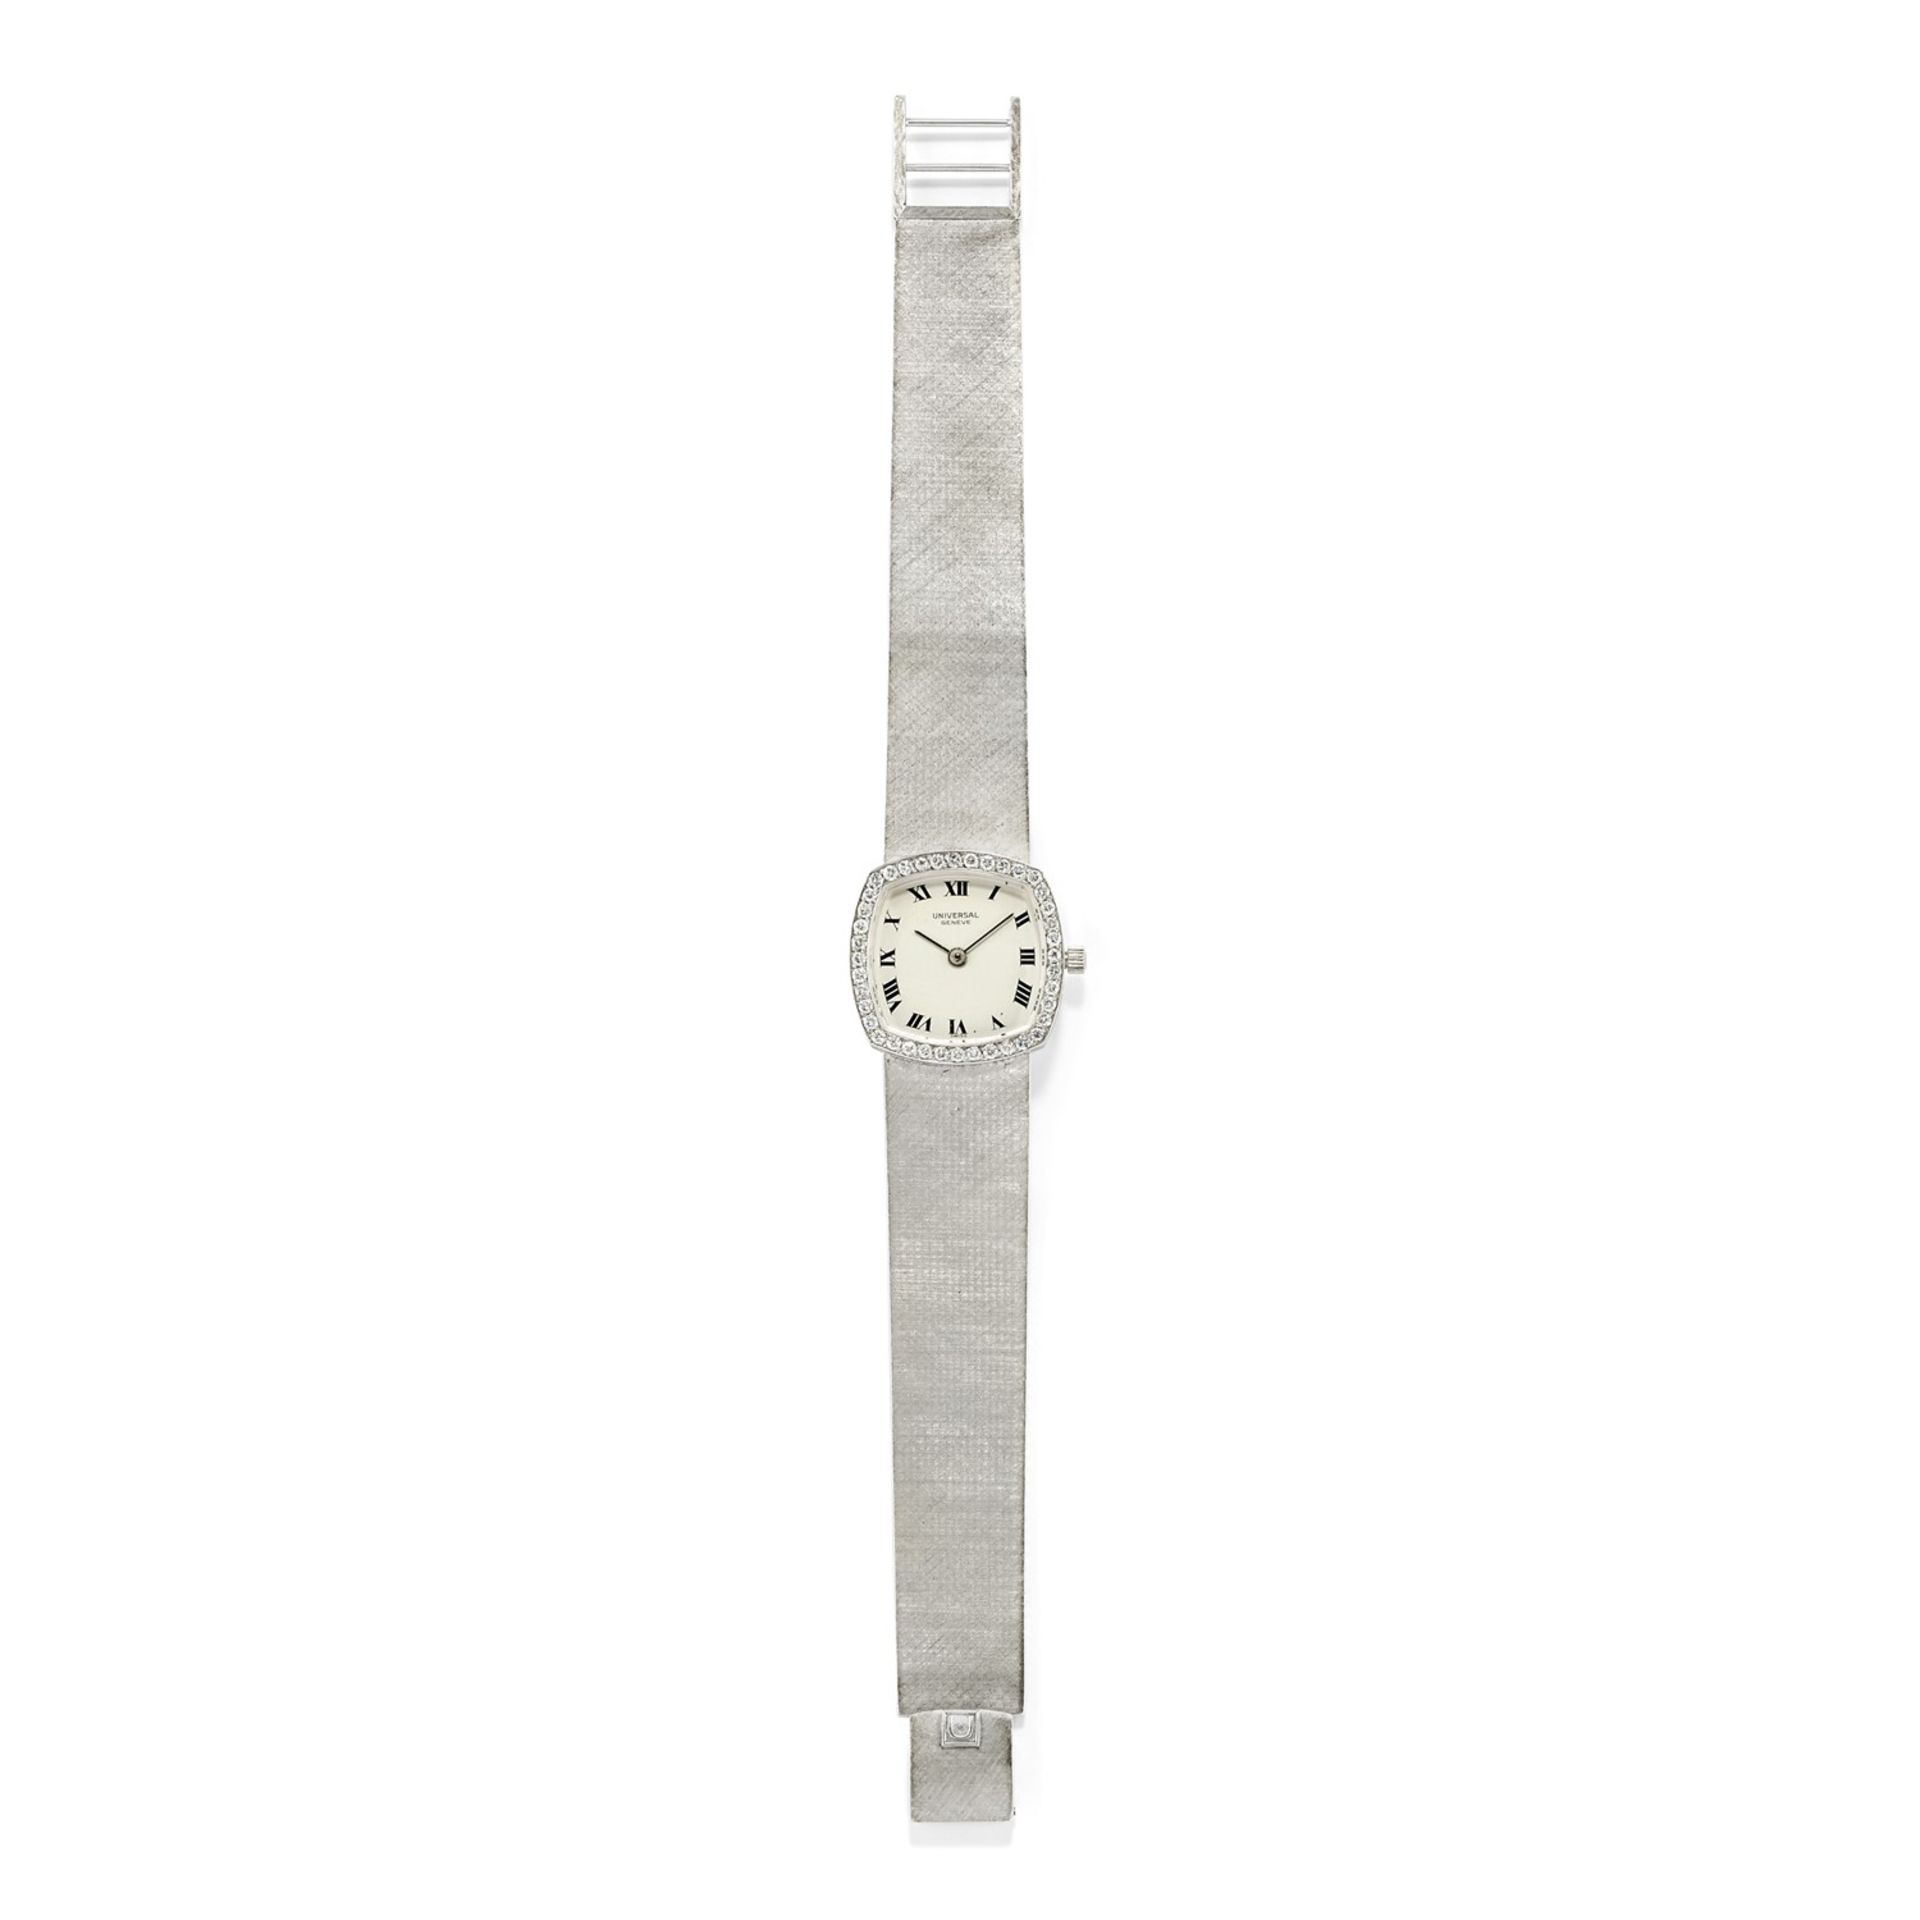 Universal - A 18K white gold lady's wristwatch, Universal - A 18K white gold lady's [...]